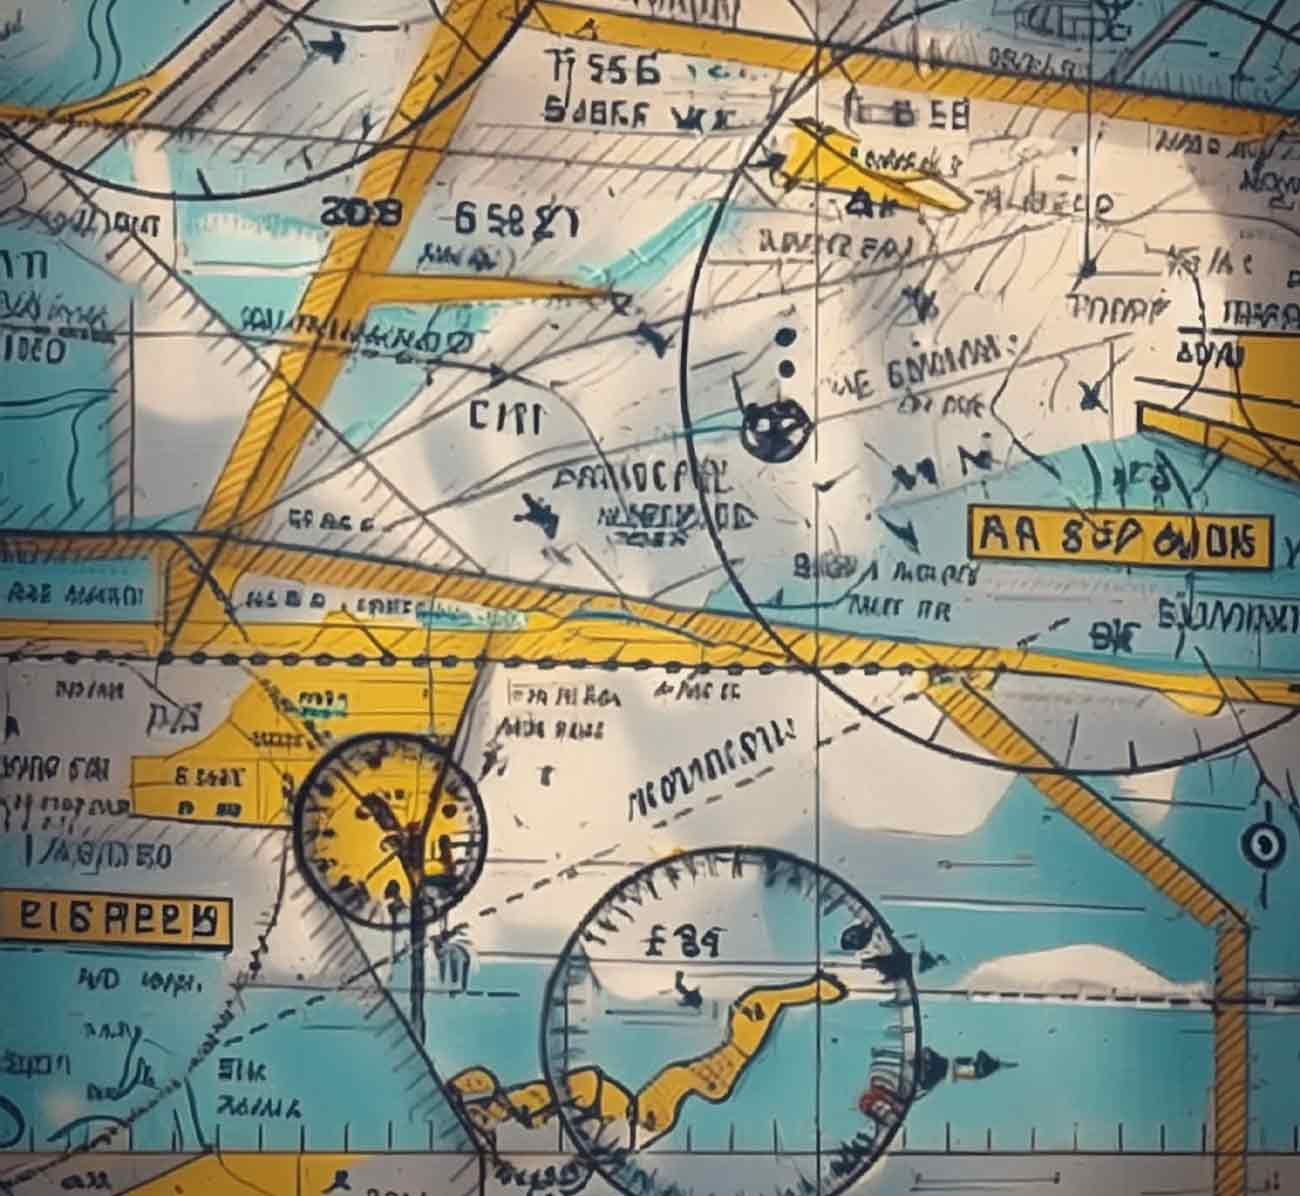 Quelle carte aéronautique choisir ?